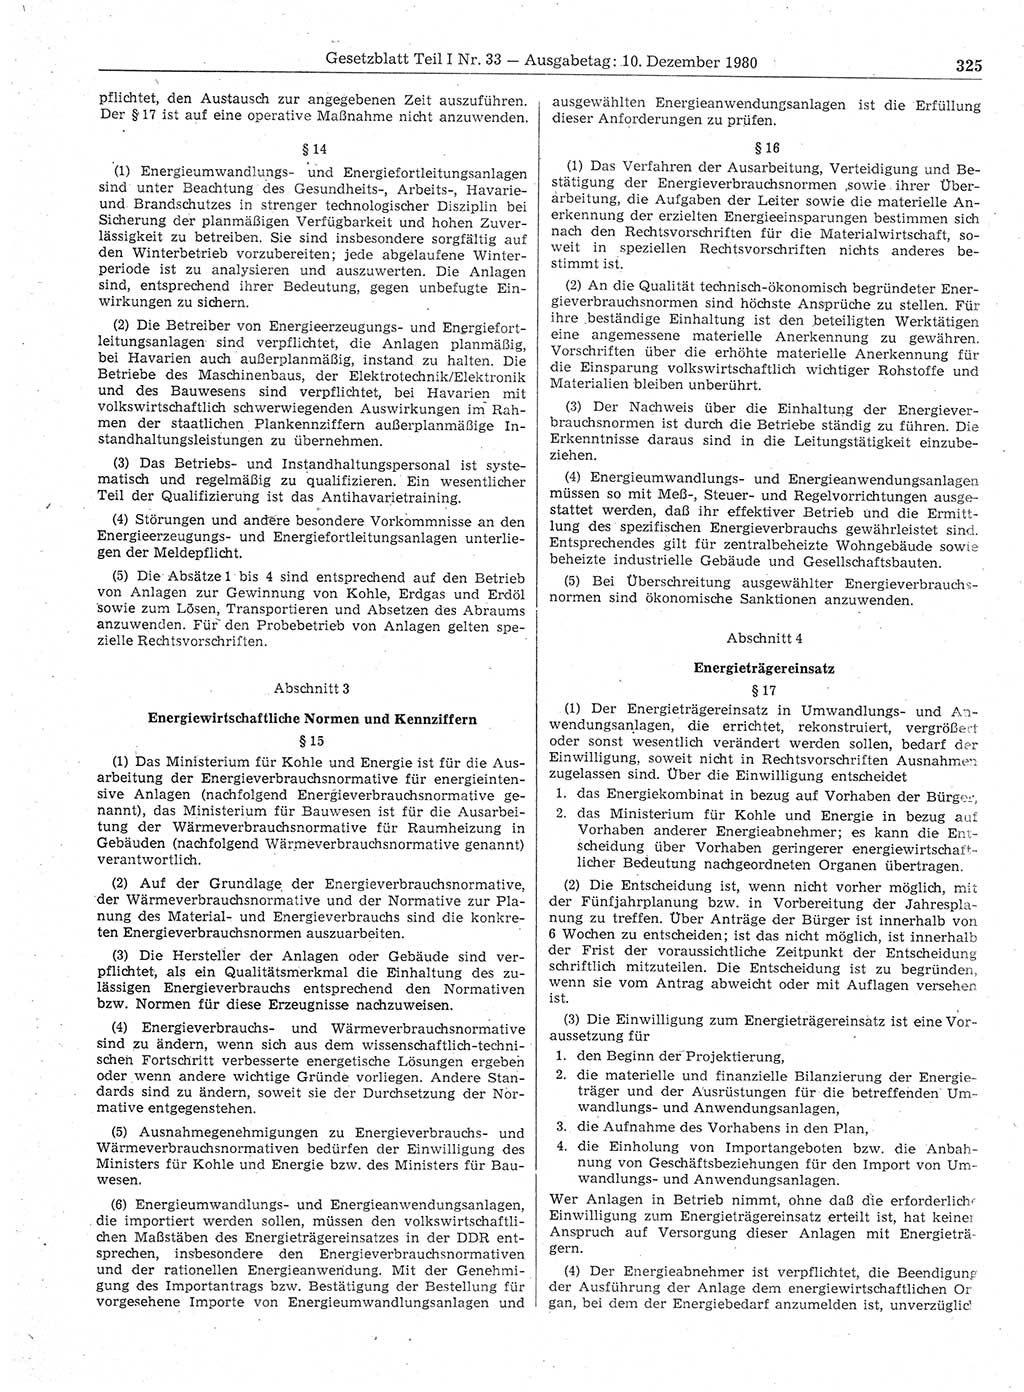 Gesetzblatt (GBl.) der Deutschen Demokratischen Republik (DDR) Teil Ⅰ 1980, Seite 325 (GBl. DDR Ⅰ 1980, S. 325)